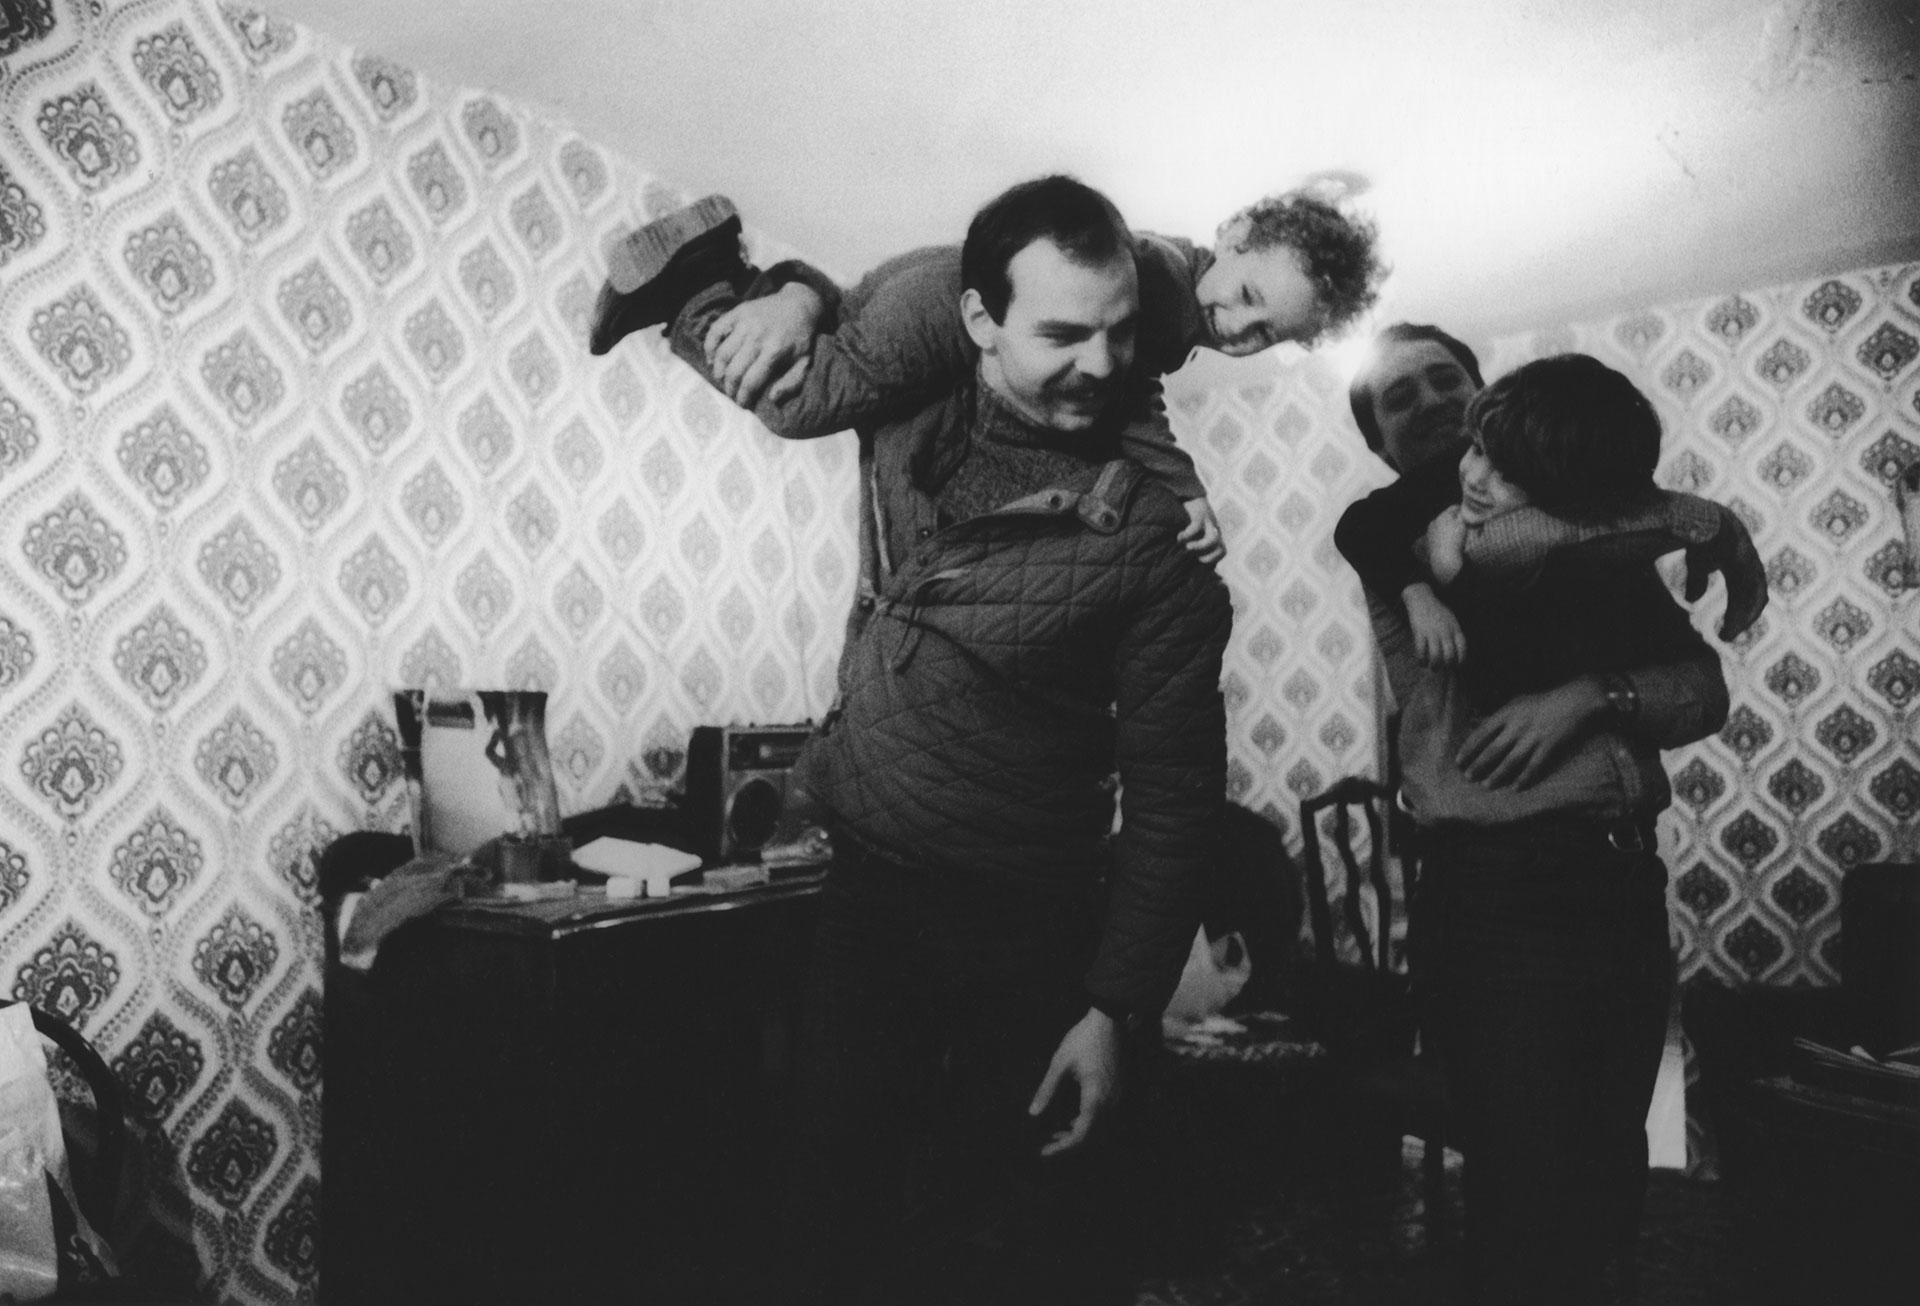 Martín Caparrós, Vera Lennie -nacida en la ESMA, donde su madre permanecía secuestrada por el Estado-, Horacio Corral y Julián Natucci en Valsaín, España, en 1979, fotografiados por Dani Yako.